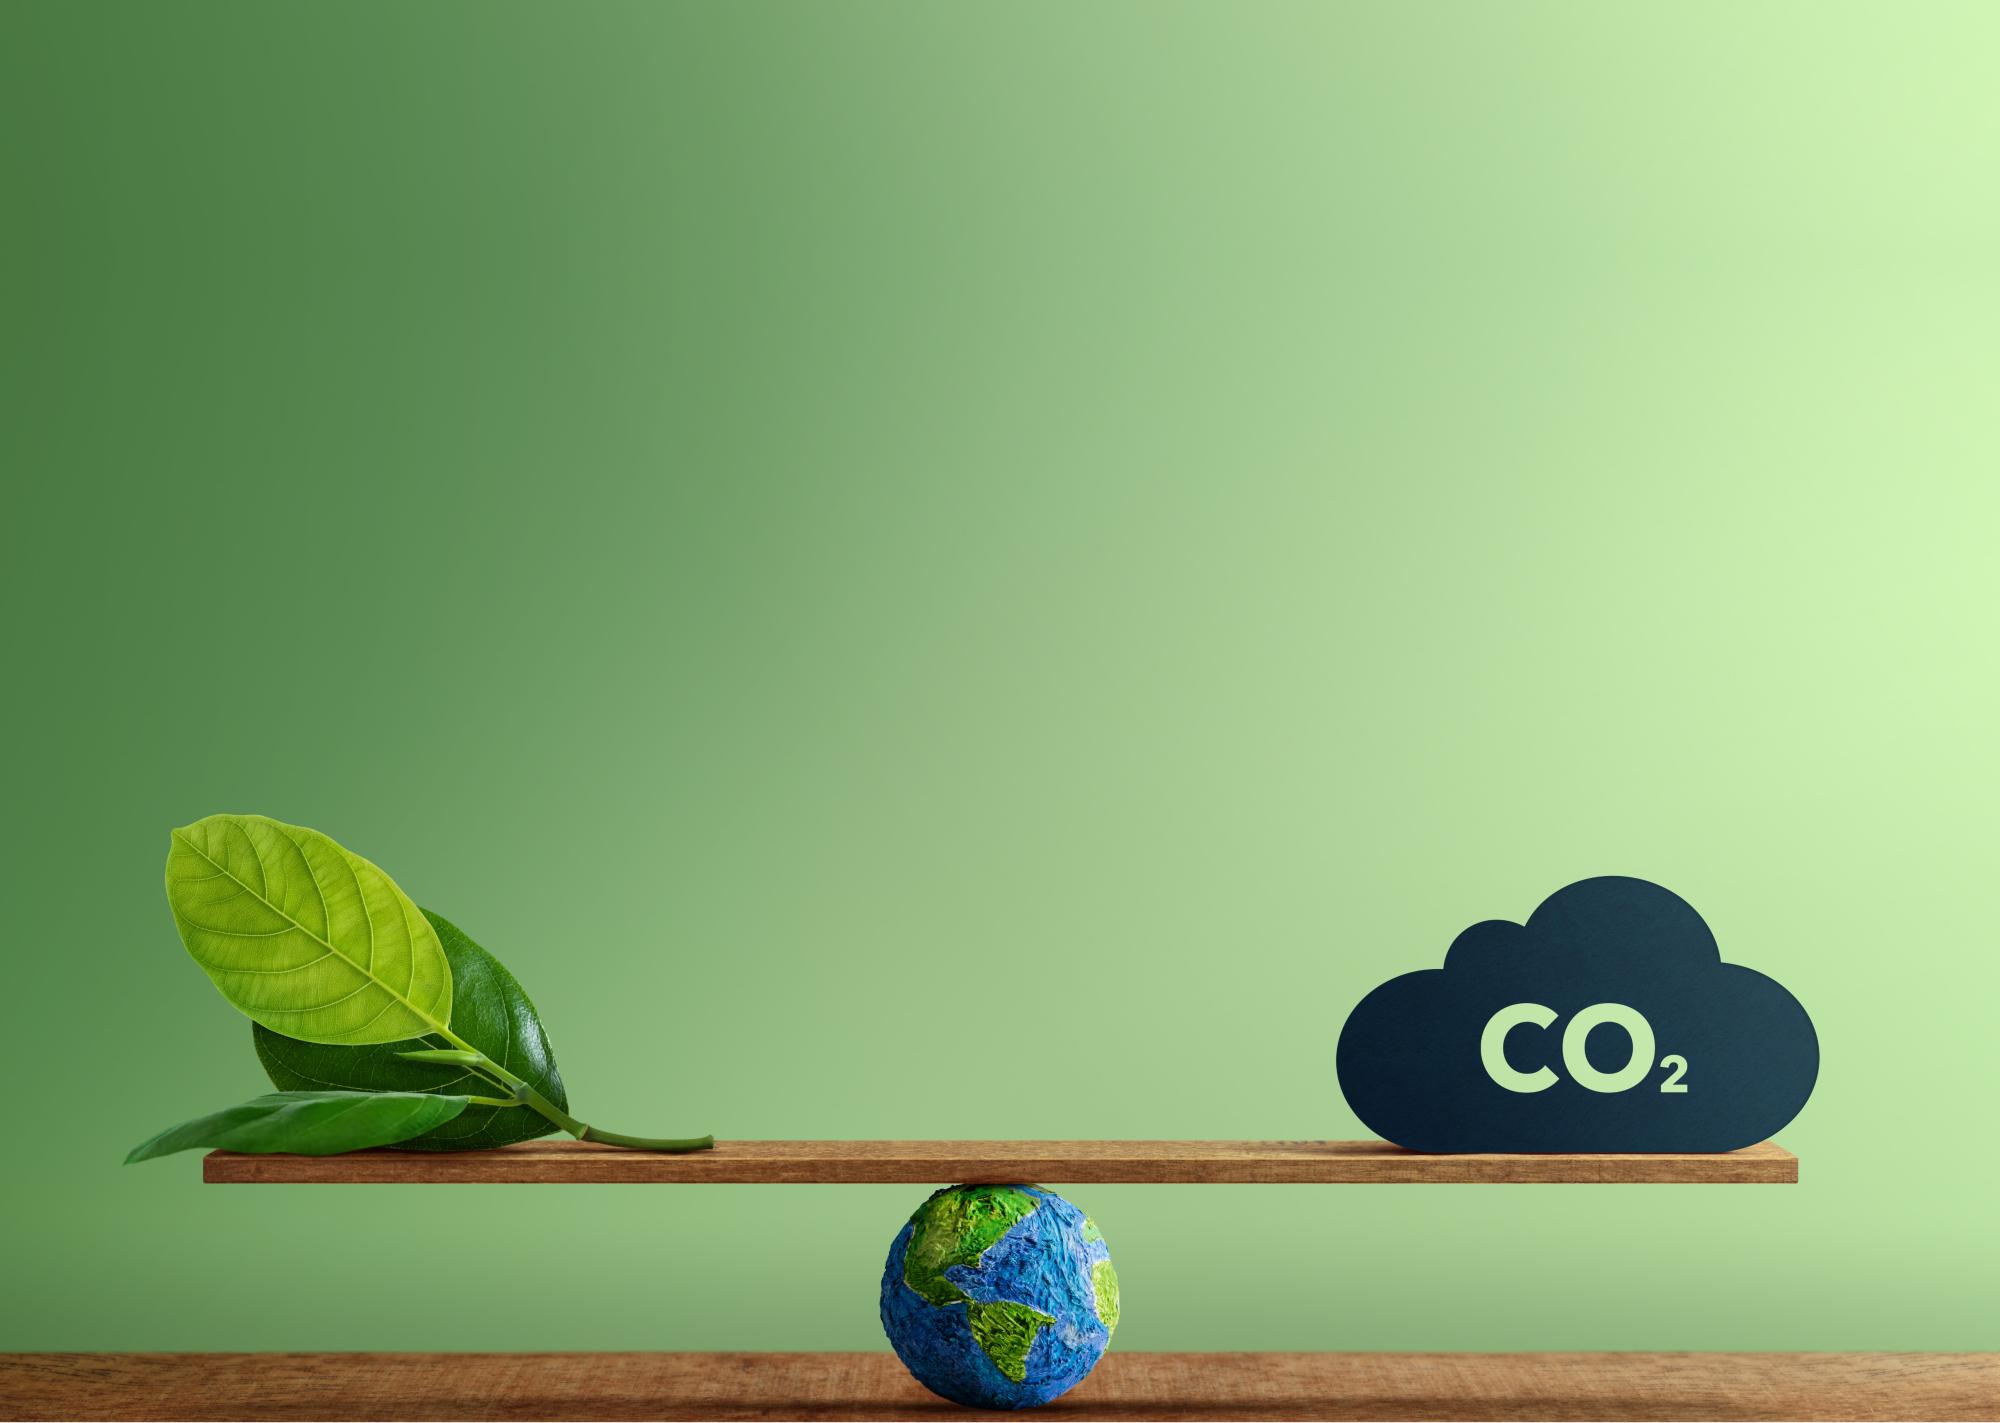 CO2 Neutral und saubere Energie: Globe Balancing zwischen einem grünen Blatt und CO2.